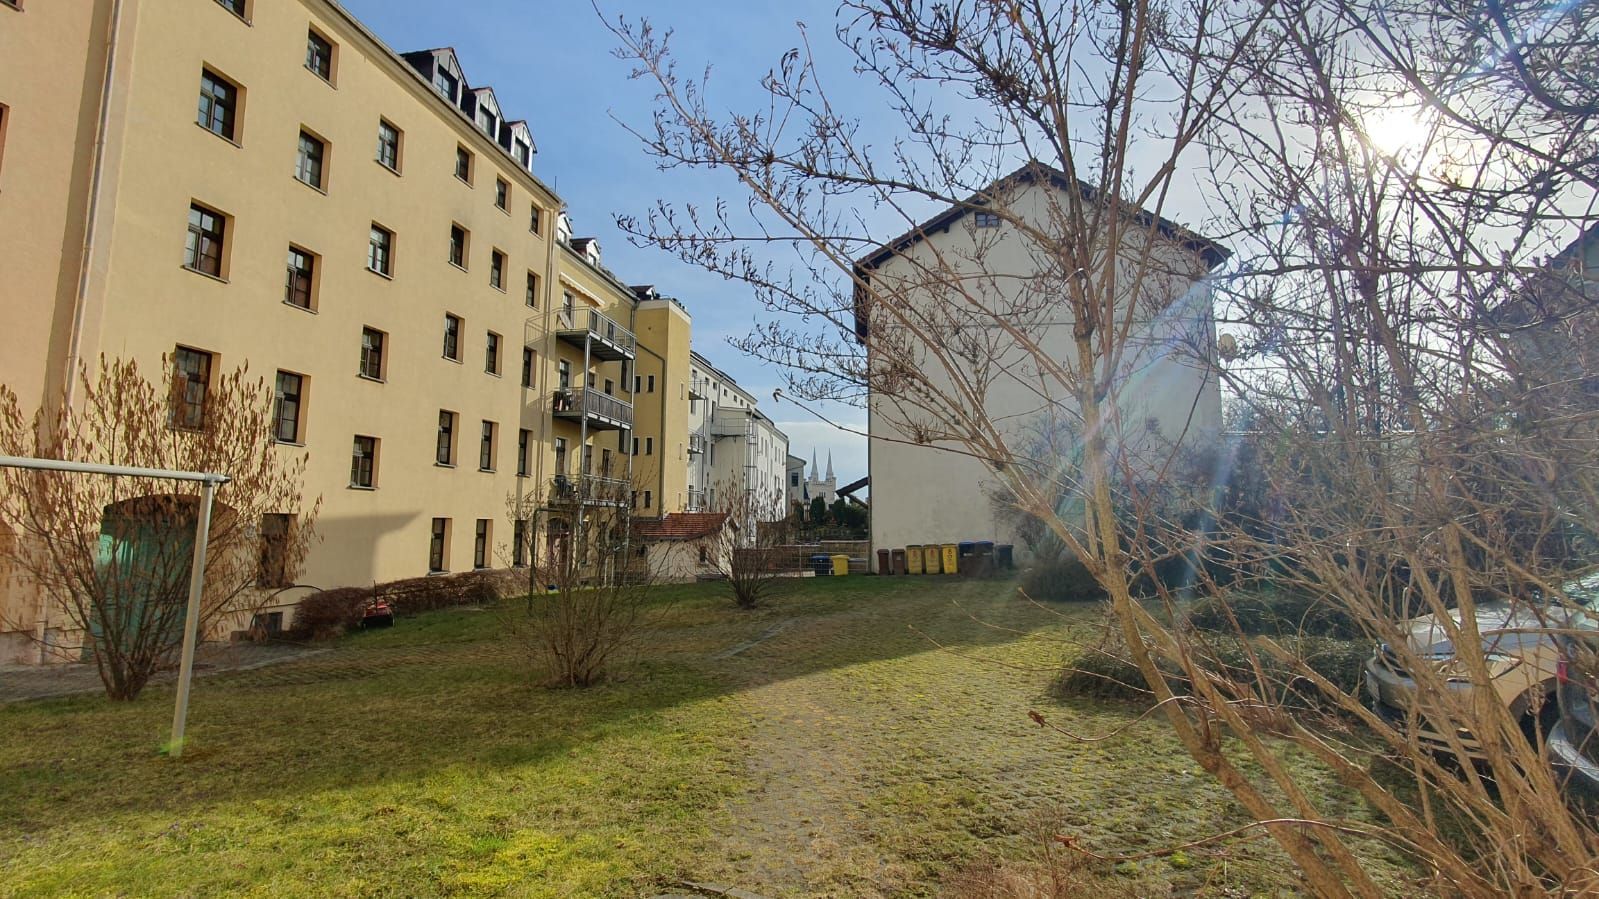 zentrale 3- Raumwohnung in Görlitz! 02826 Görlitz, Etagenwohnung